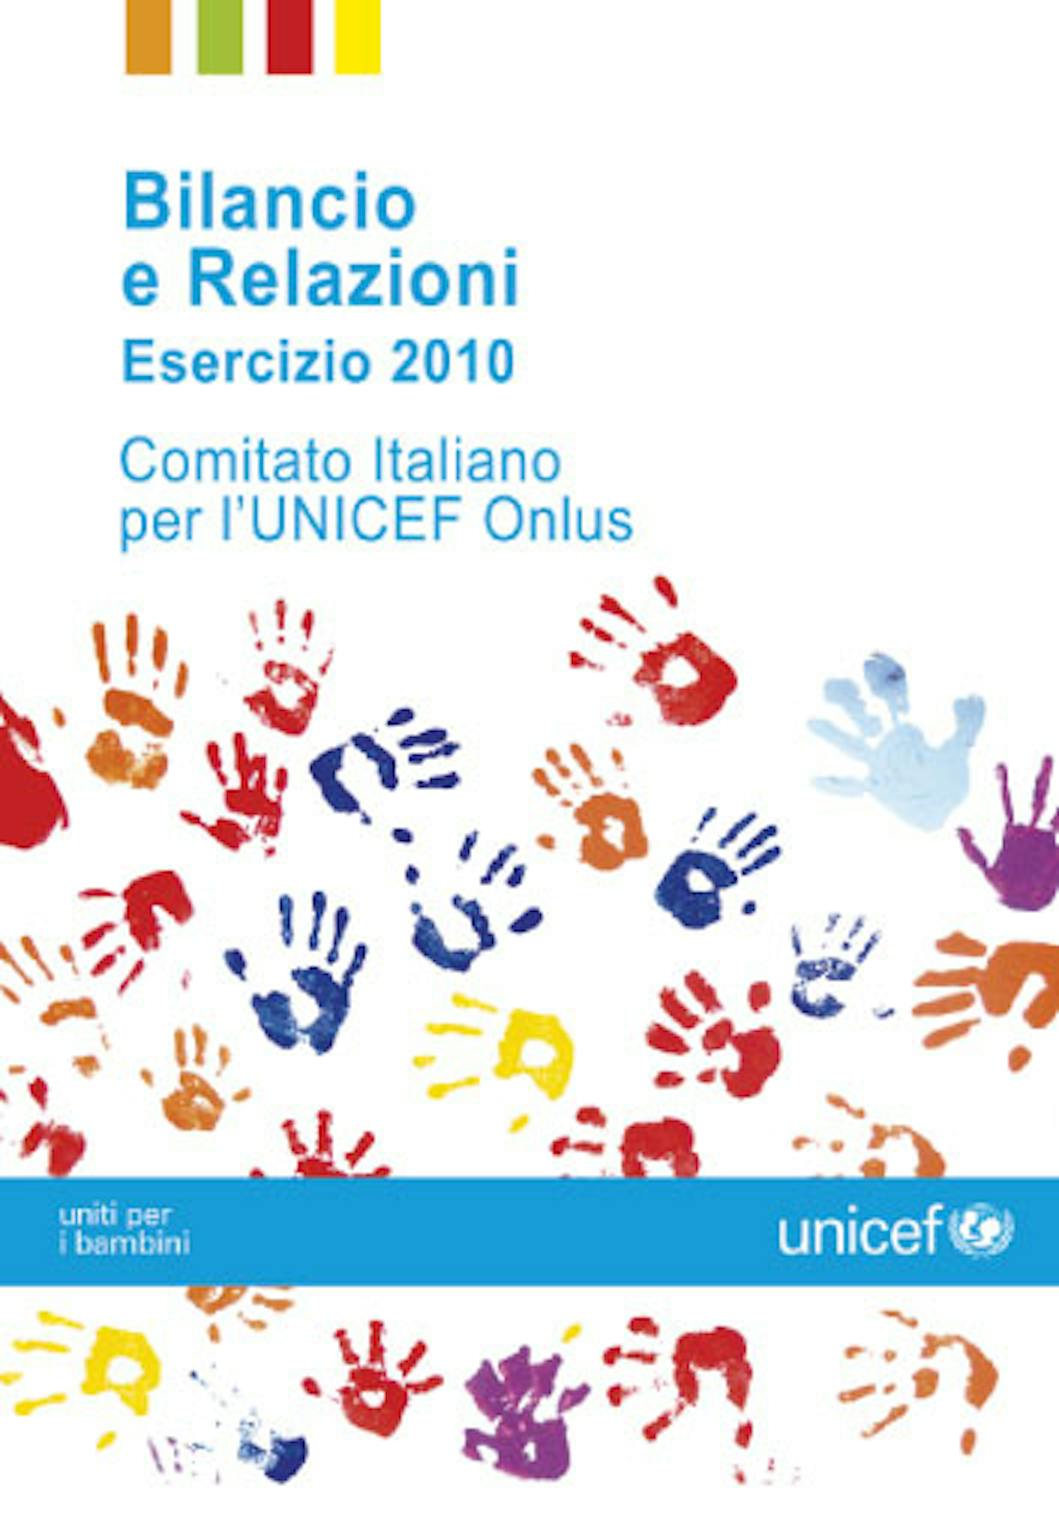 Bilancio e Relazioni Esercizio 2010 Comitato Italiano UNICEF